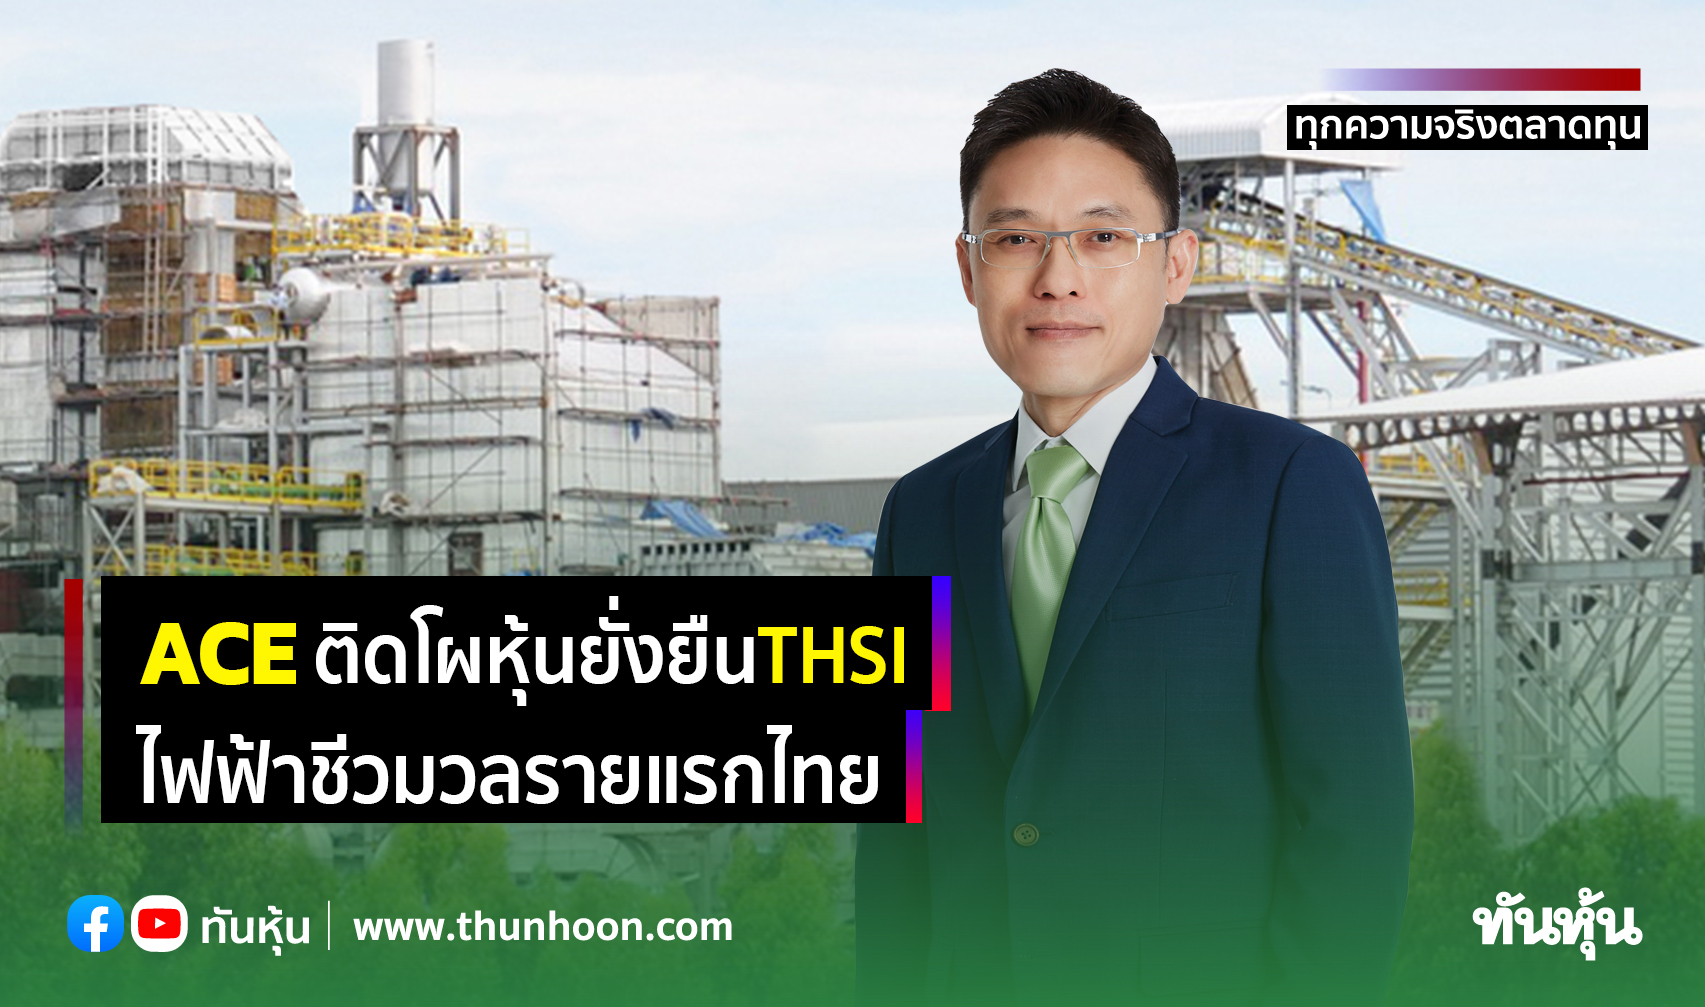 ACE ติดโผหุ้นยั่งยืนTHSI ไฟฟ้าชีวมวลรายแรกไทย